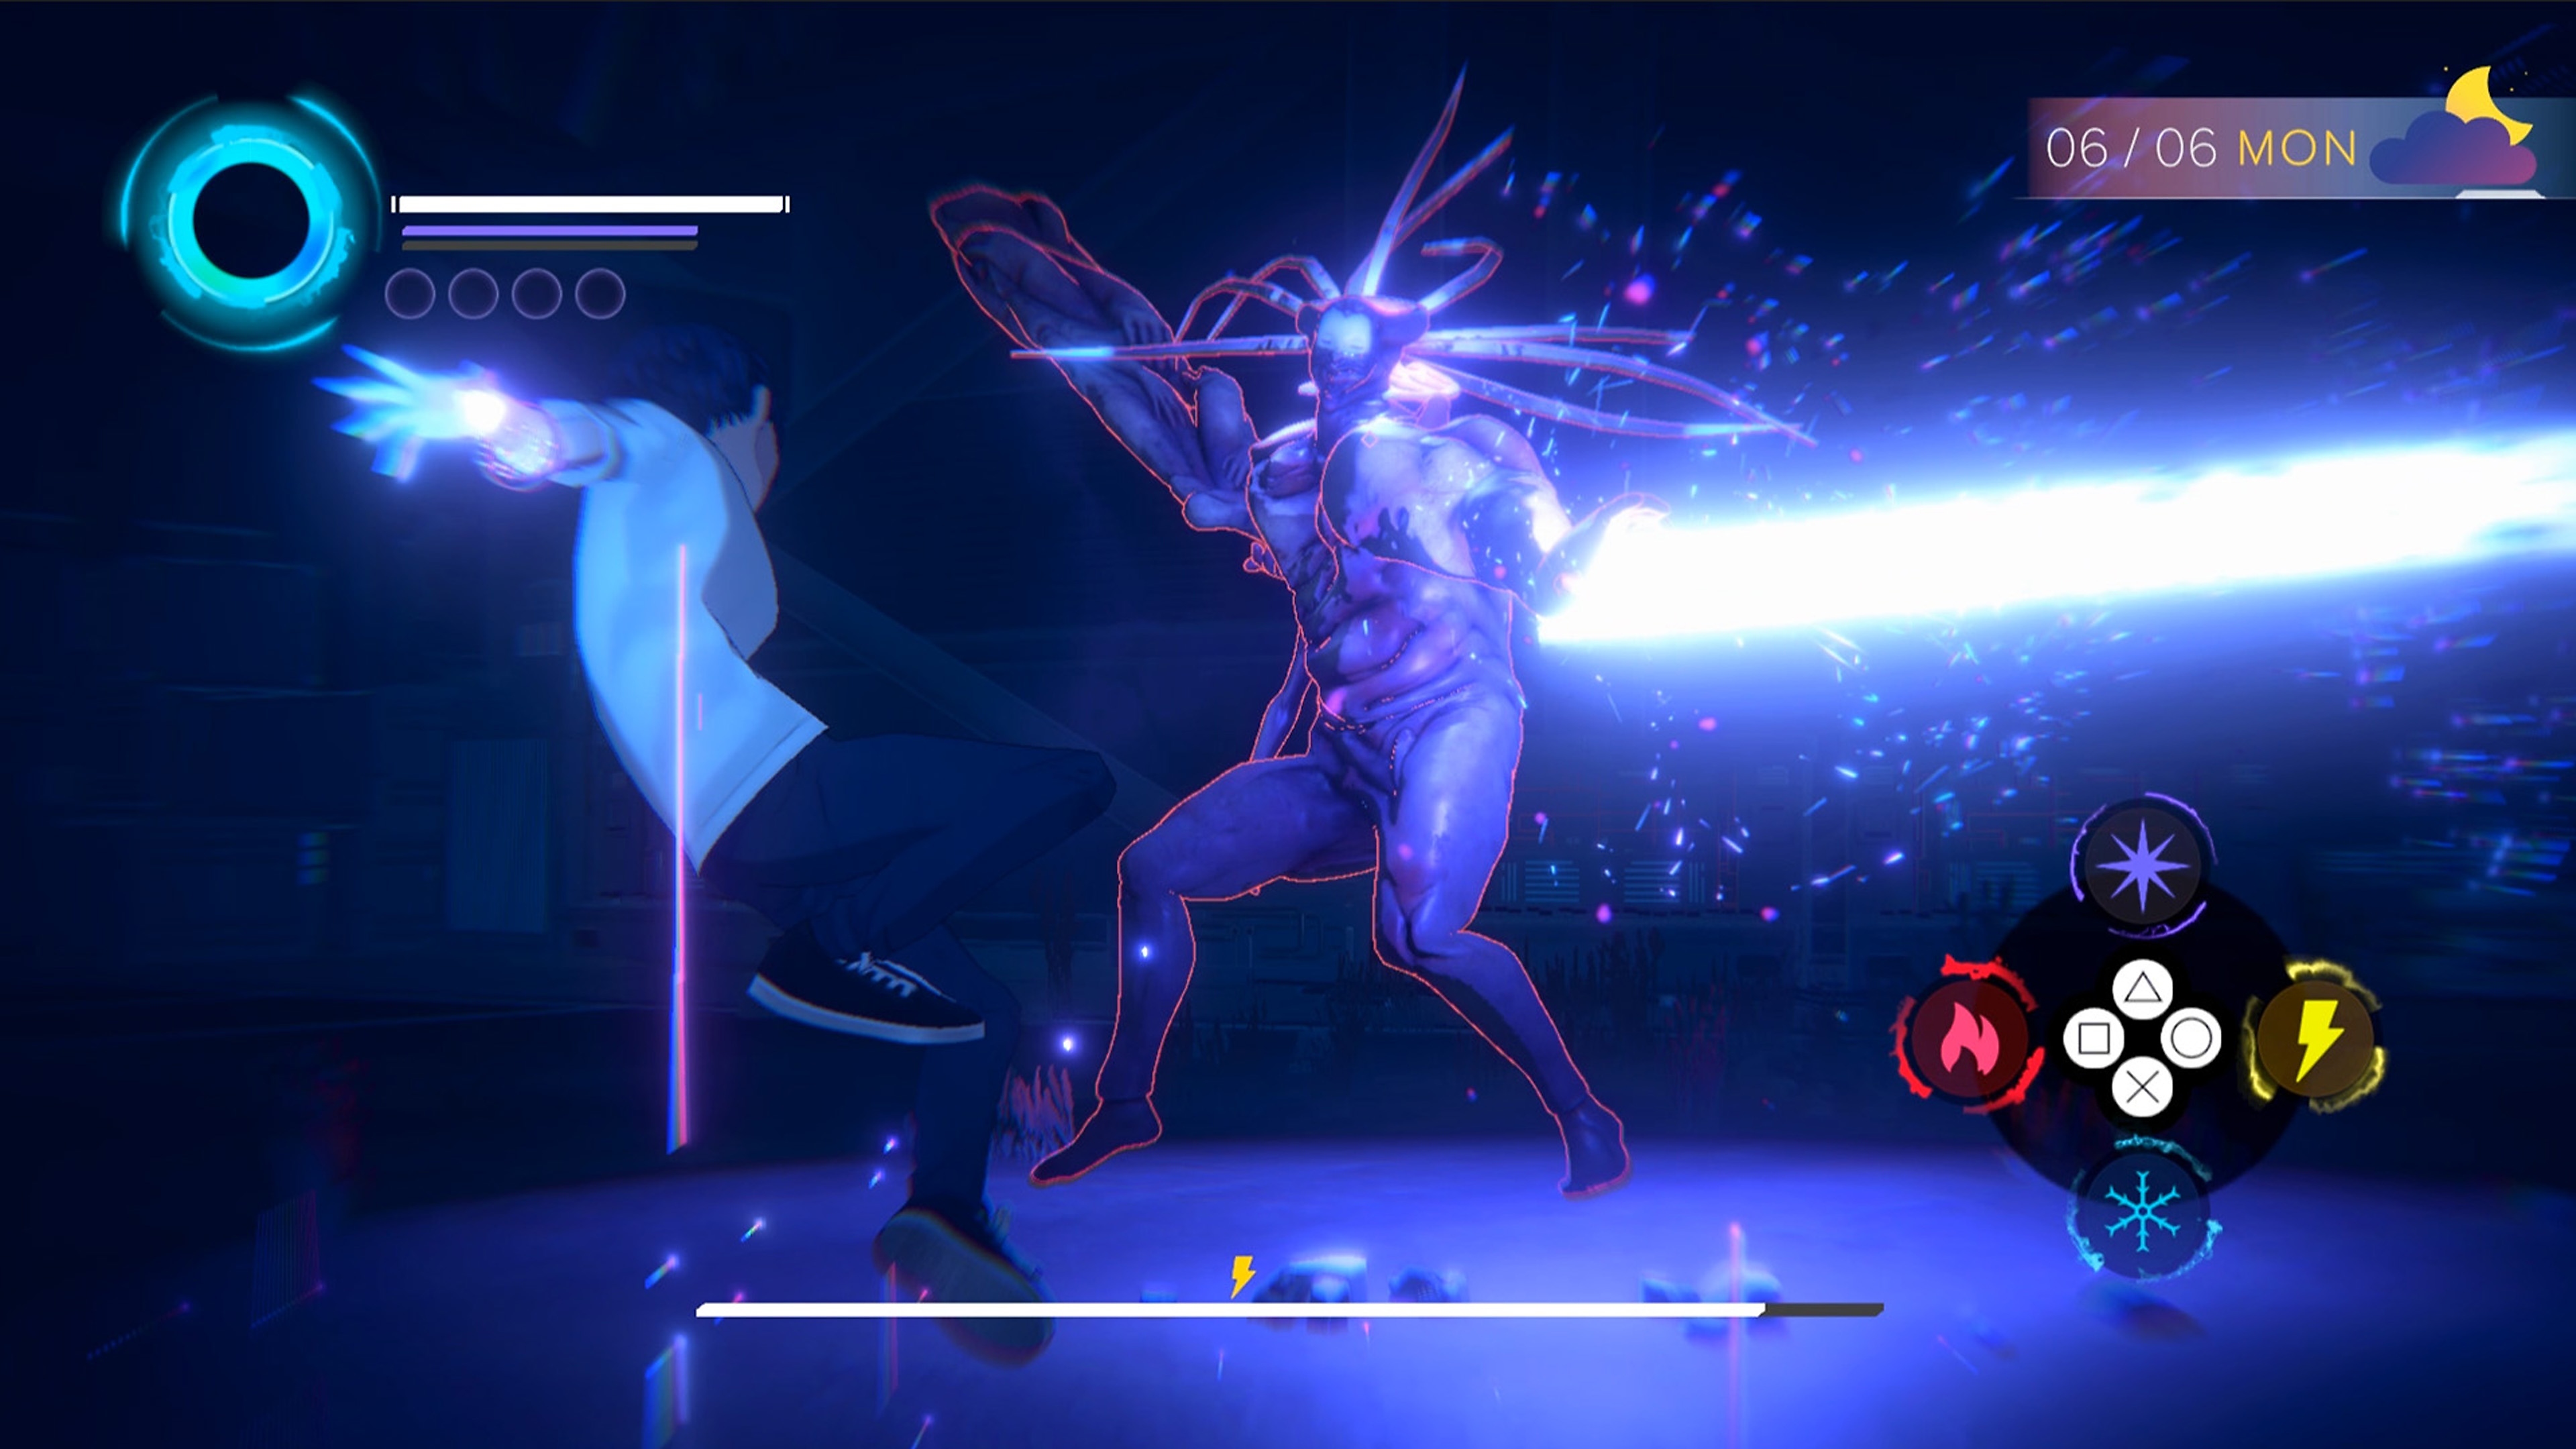 لقطة شاشة من لعبة Eternights بها شخصية في سن المرحلة الثانوية تقاتل مخلوقًا شيطانيًا كبيرًا يشبه البشر.